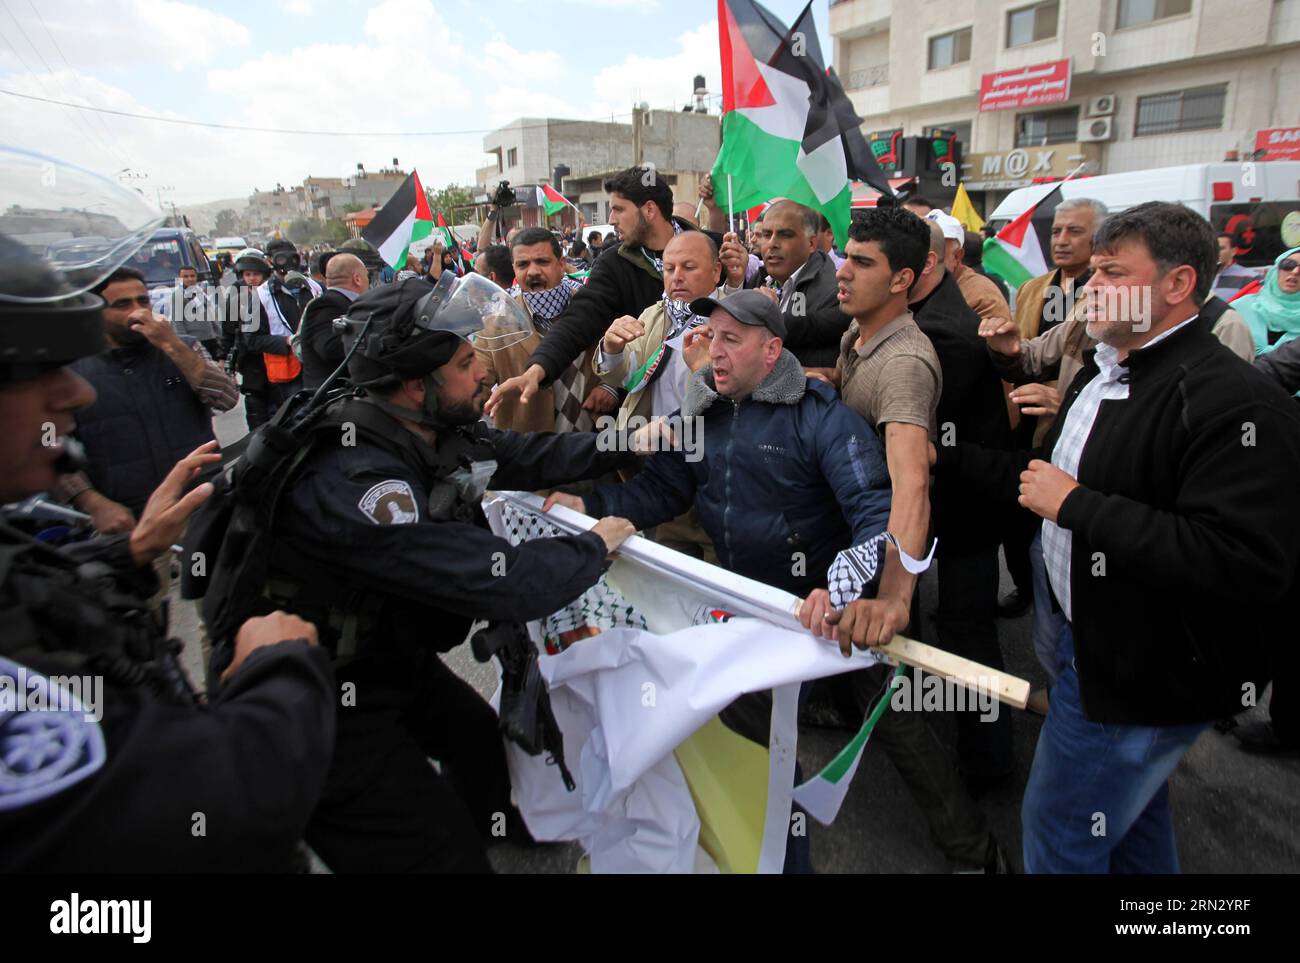 (150330) -- NABLUS, 30 marzo 2015 -- i soldati israeliani si scontrano con i palestinesi mentre disperdono i manifestanti da una strada principale durante una protesta che segna la giornata della Terra nel villaggio di Howara vicino alla città di Nablus in Cisgiordania, il marzo. 30, 2015. I palestinesi hanno celebrato la giornata della Terra il 30 marzo, la commemorazione annuale delle proteste nel 1976 contro l'appropriazione da parte di Israele di terreni di proprietà araba in Galilea. MIDEAST-NABLUS-LAND-DAY-PROTESTA NidalxEshtayeh PUBLICATIONxNOTxINxCHN Nablus marzo 30 2015 soldati israeliani si scontrano con I PALESTINESI mentre manifestano da una strada principale durante una protesta che segna la giornata del Paese a Howara Foto Stock